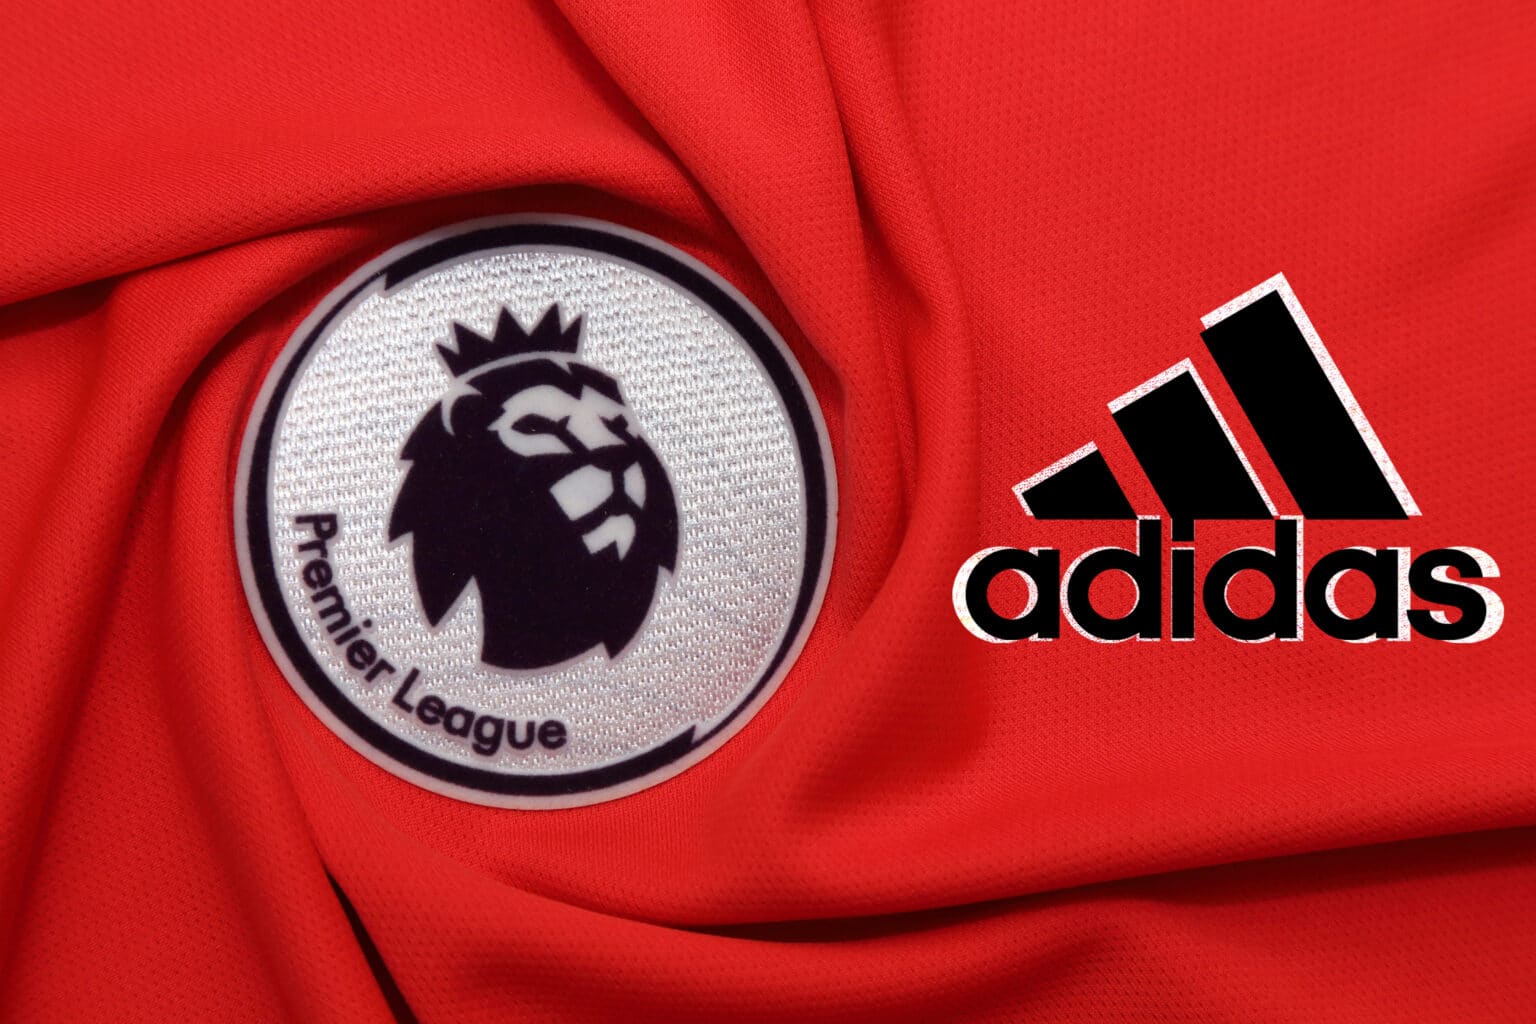 10 ชุดทีม Adidas Premier League ที่ดีที่สุดตลอดกาล: แถลงการณ์แฟชั่นฟุตบอลอันเป็นเอกลักษณ์